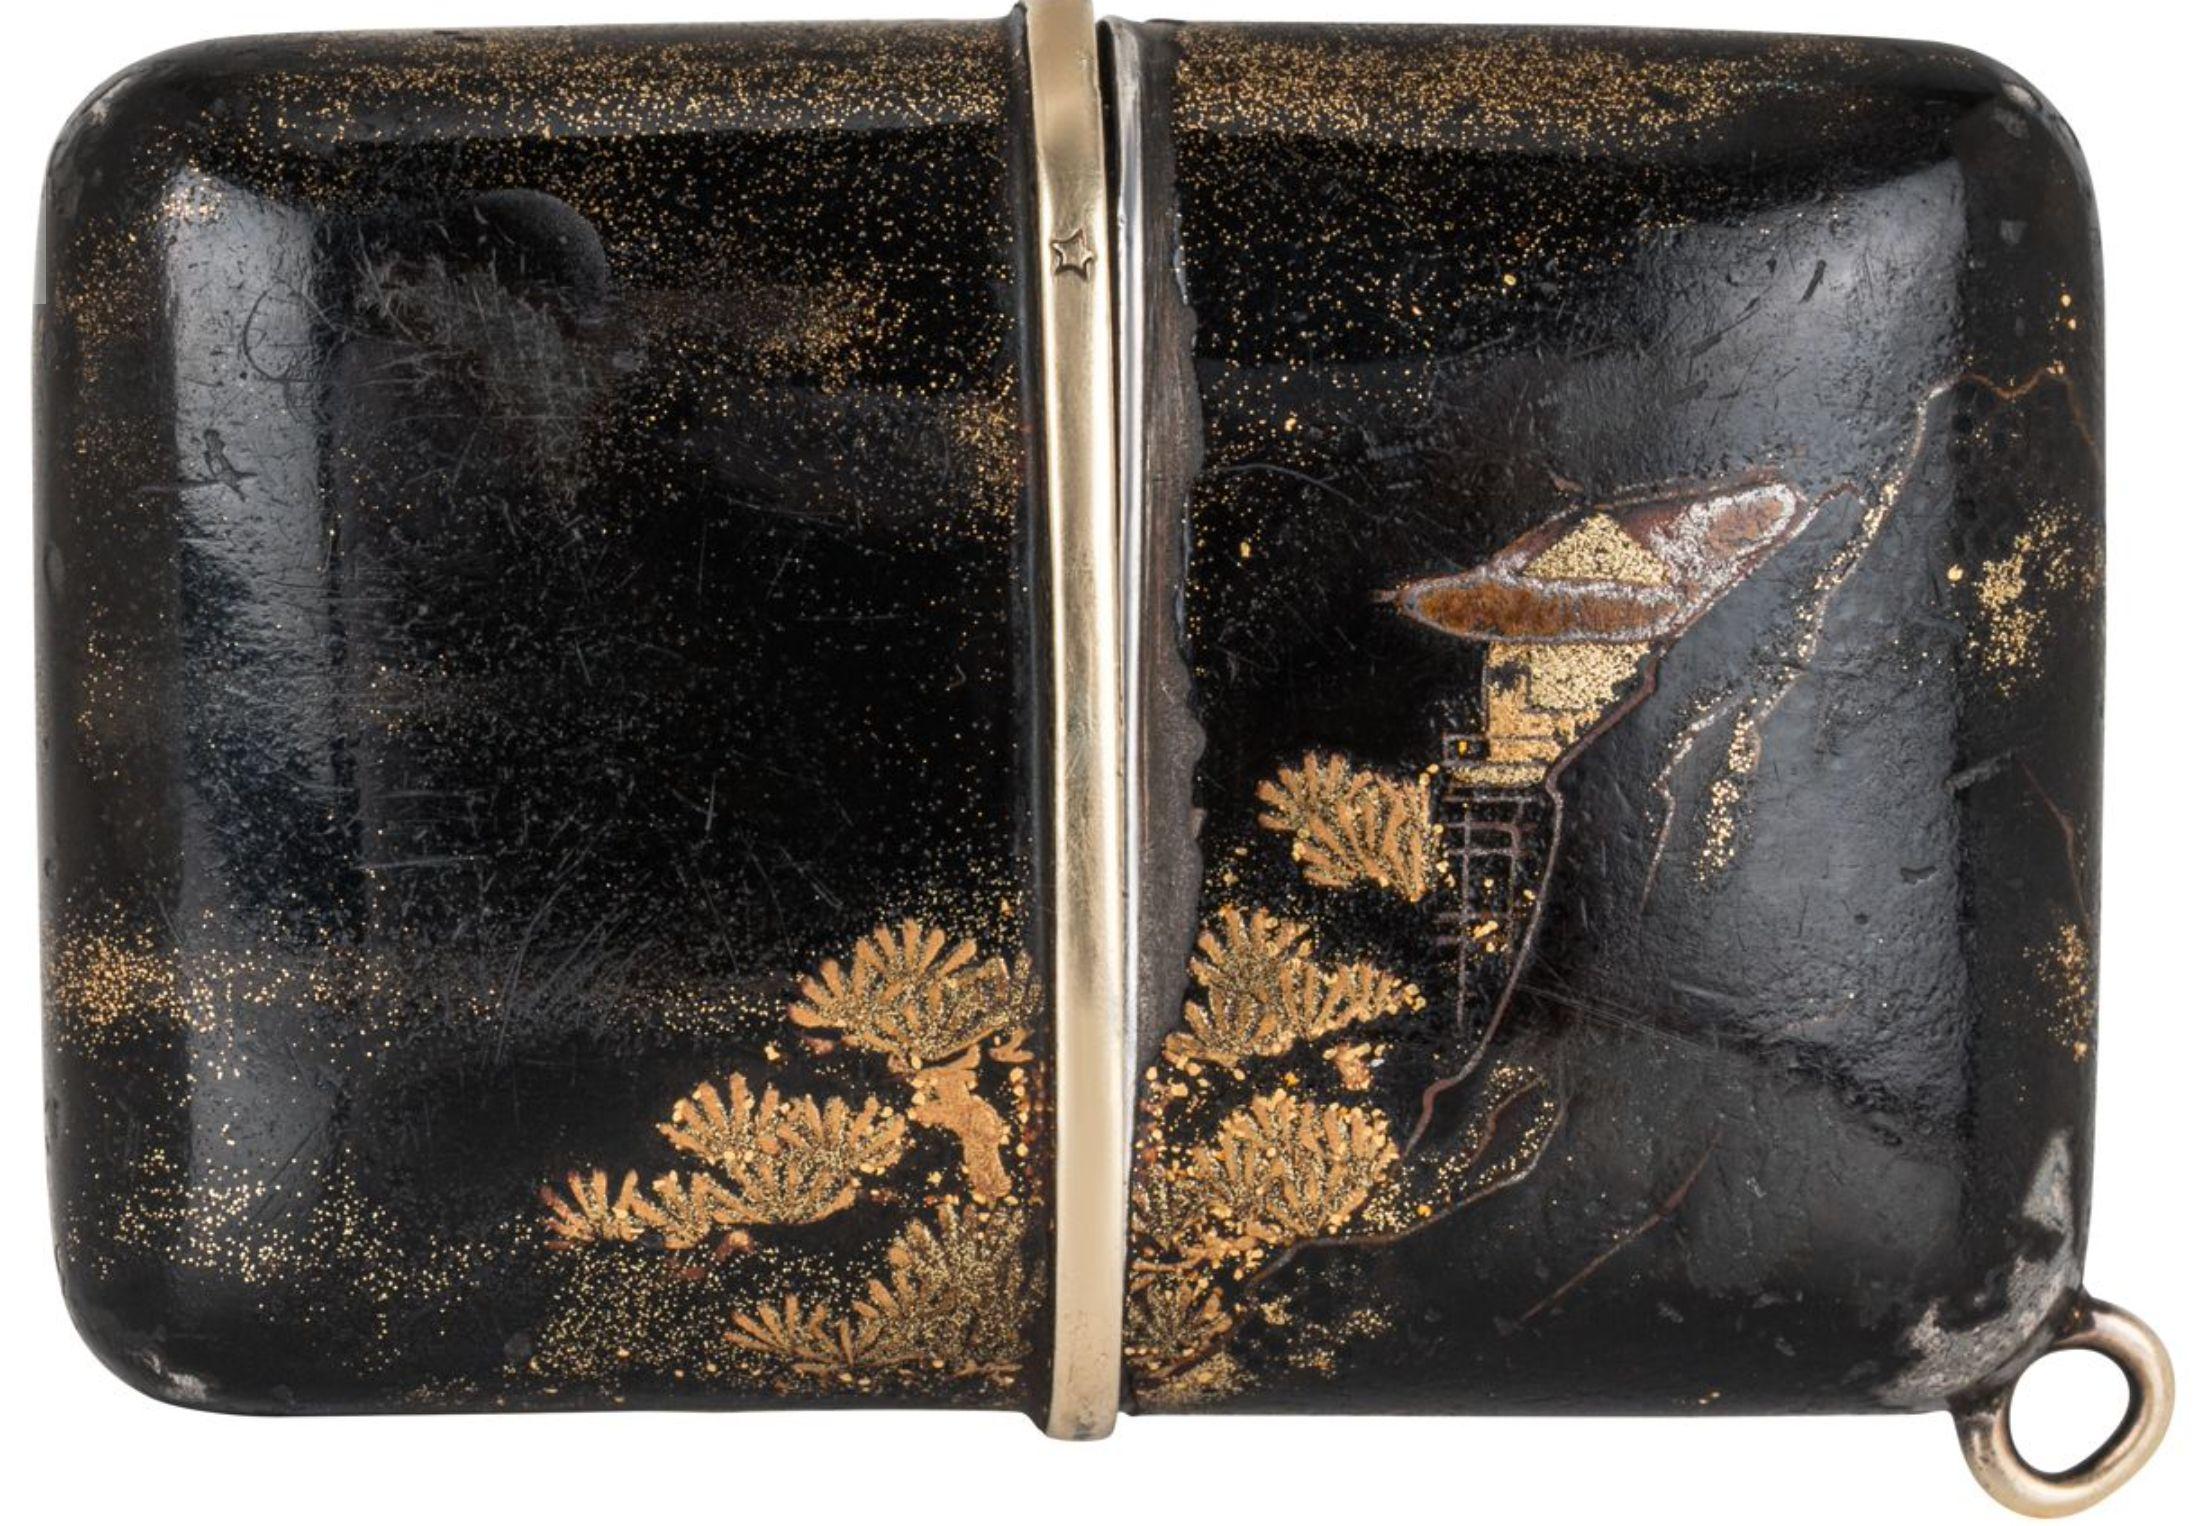 Movado. Eine seltene und frühe Maki-E Ermeto Handaufzug Handtasche oder Taschenuhr C1929

Zifferblatt: Das versilberte Originalzifferblatt ist vollständig mit Movado Chronometre Emerto signiert, mit Ziffern im Breguet-Stil und